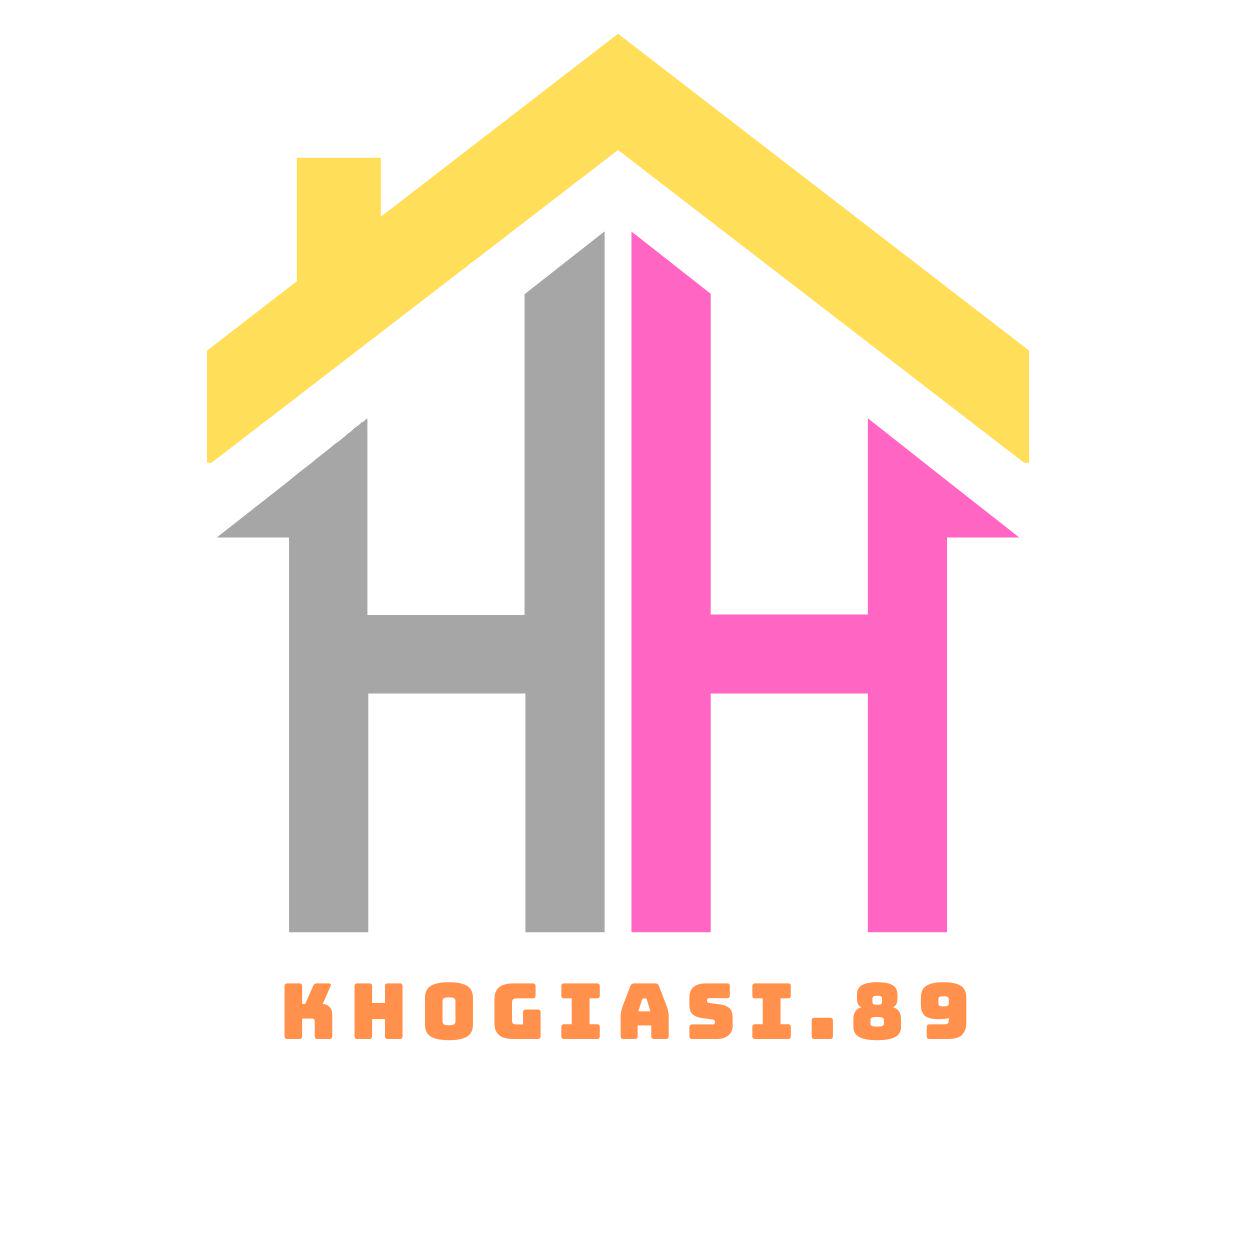 KhoGiaSi.89, Cửa hàng trực tuyến | BigBuy360 - bigbuy360.vn